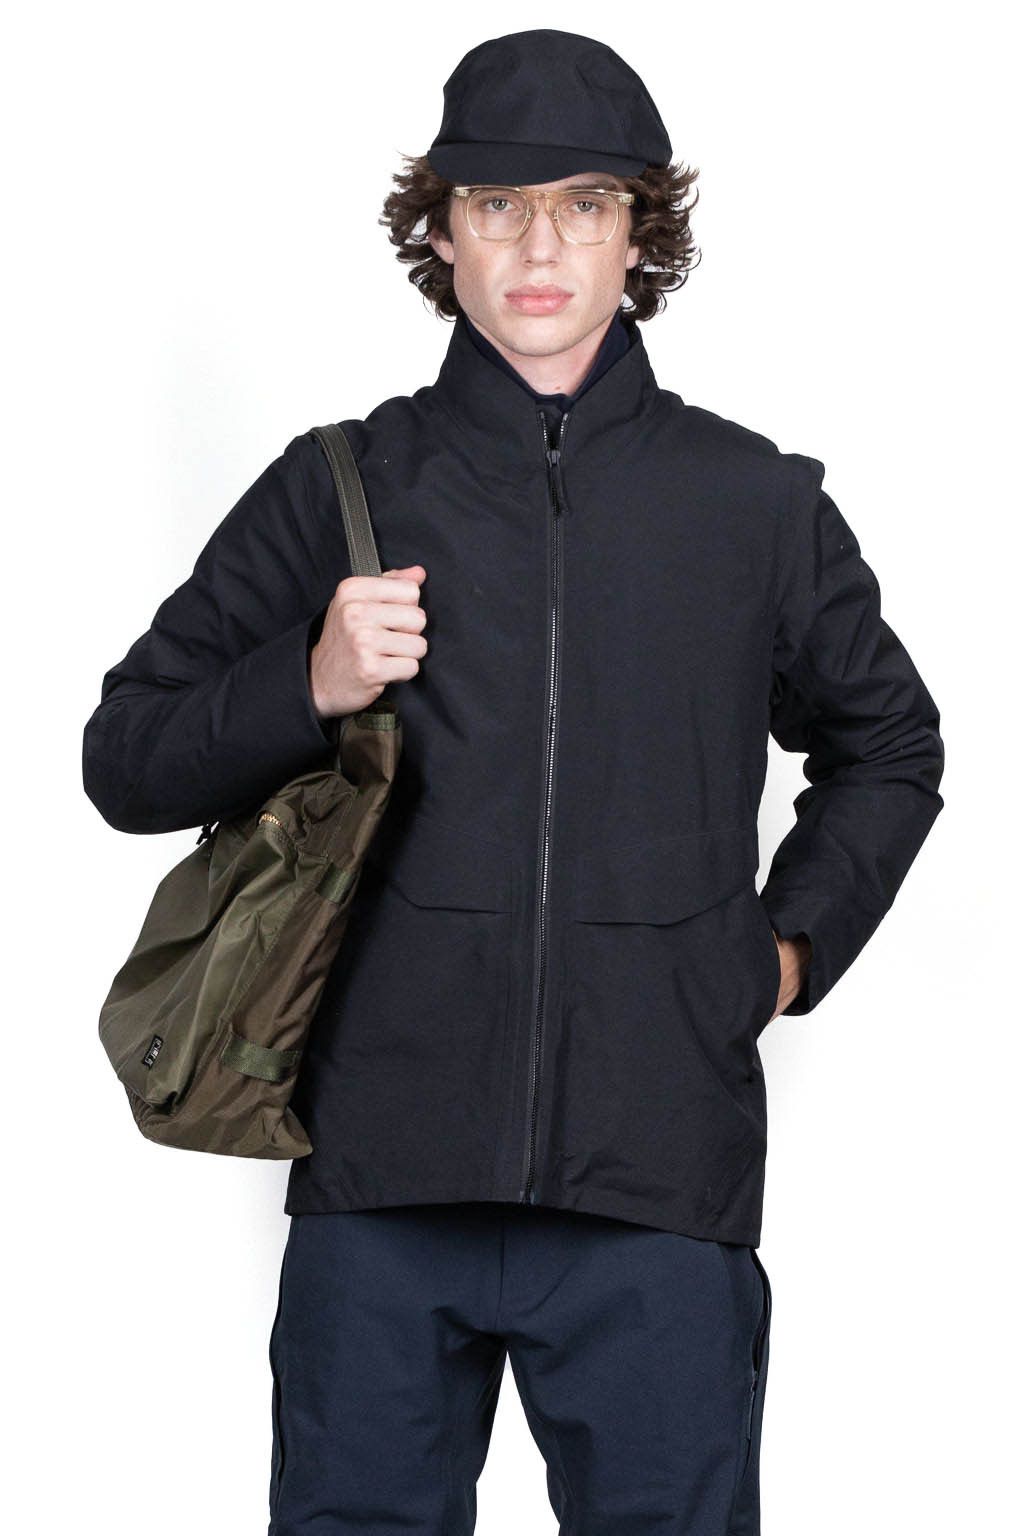 Range Bonded Fleece Jacket